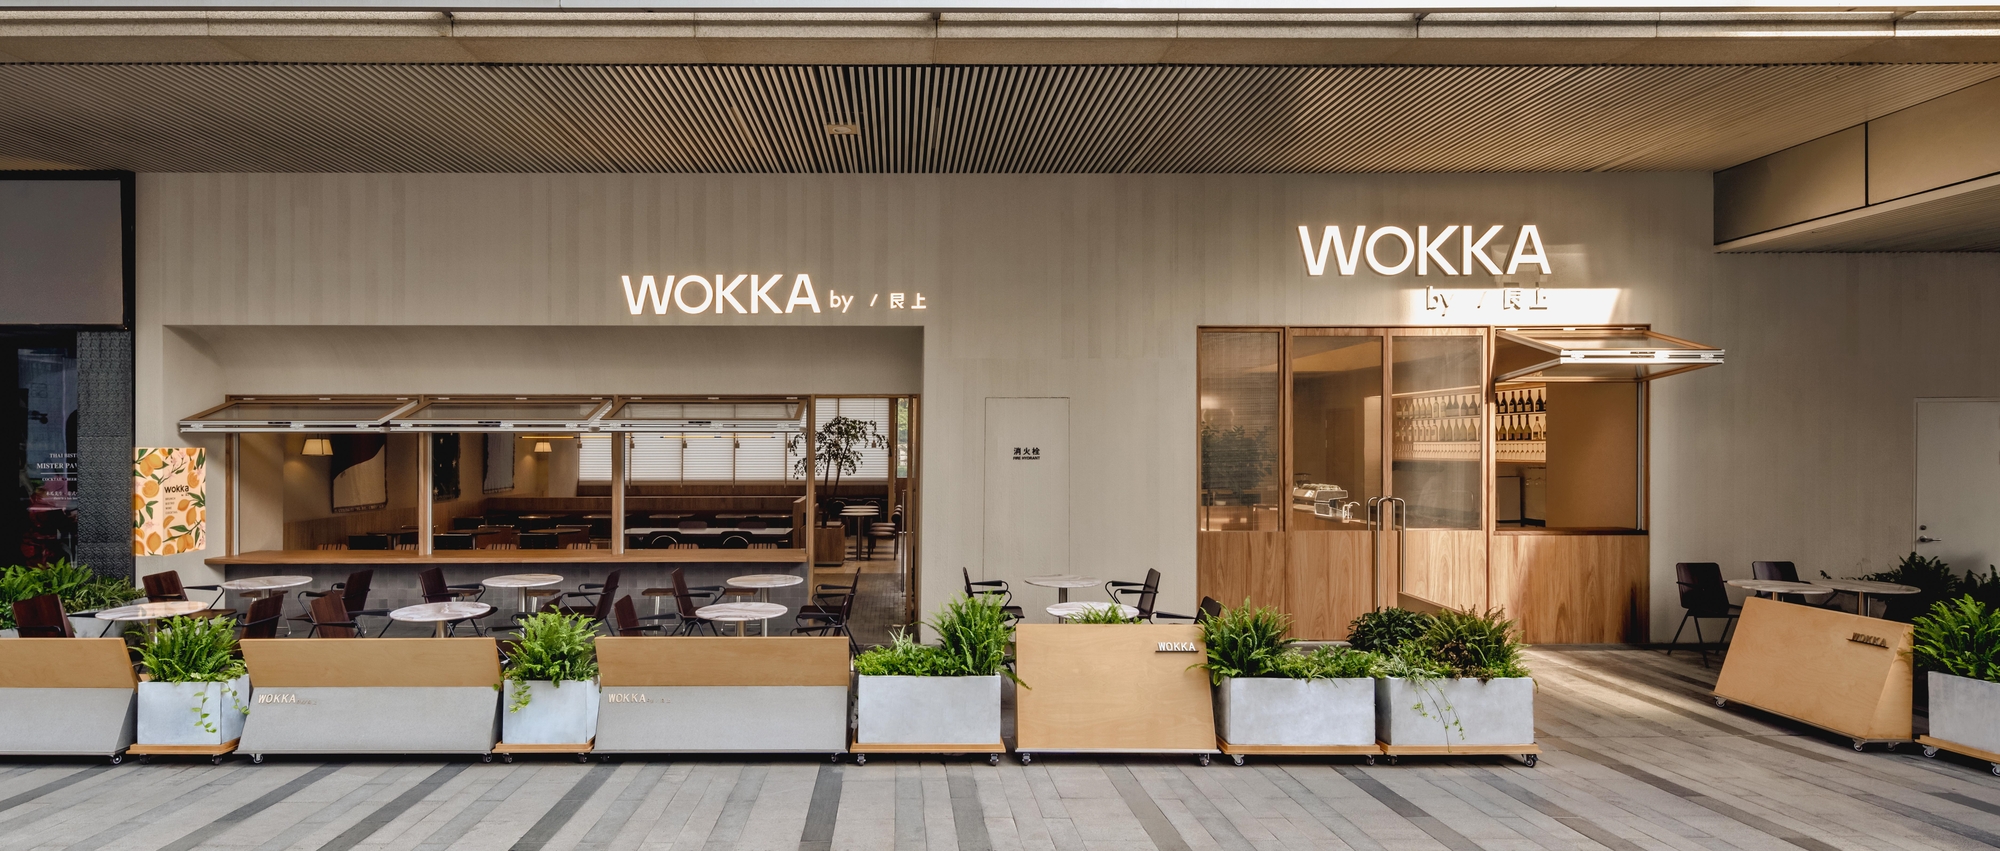 艮上酒家WOKKA|ART-Arrakis | 建筑室内设计的创新与灵感